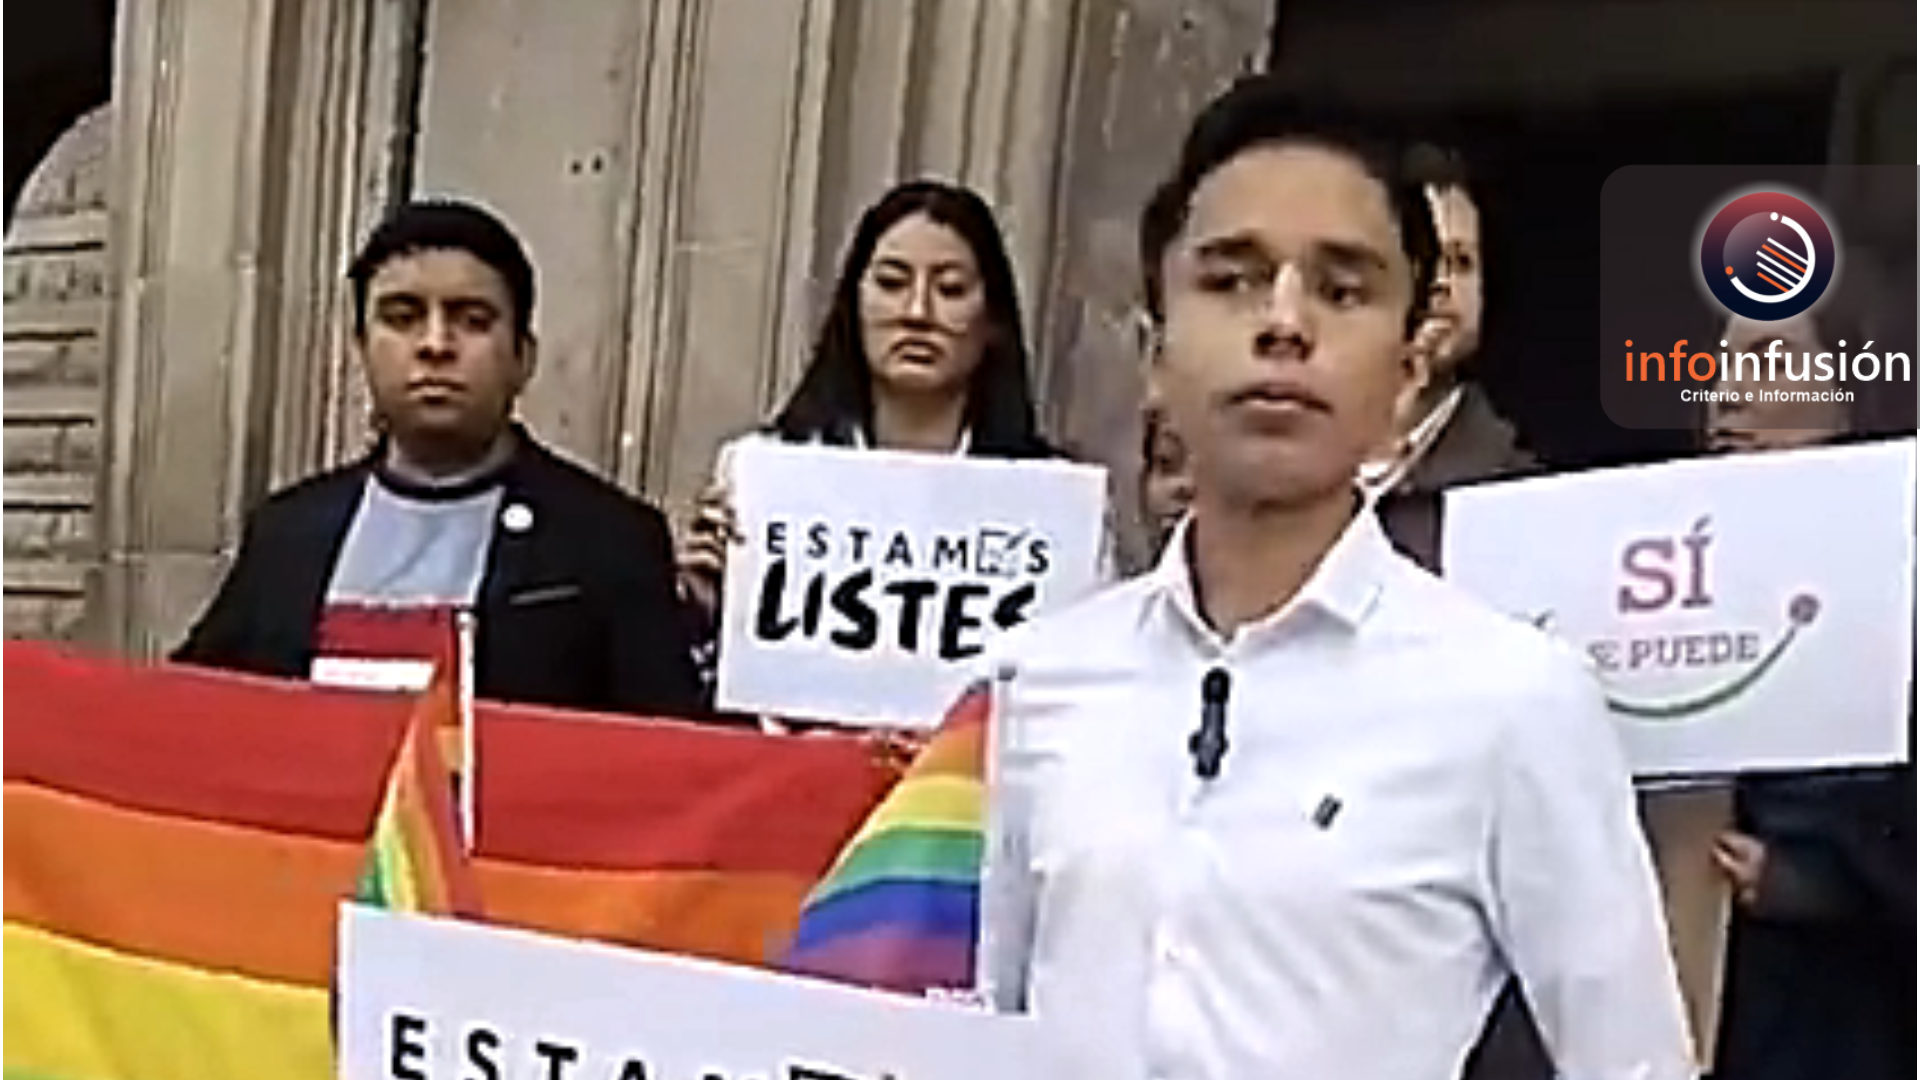 Activistas LGBT demandan a partidos políticos inclusión en candidaturas